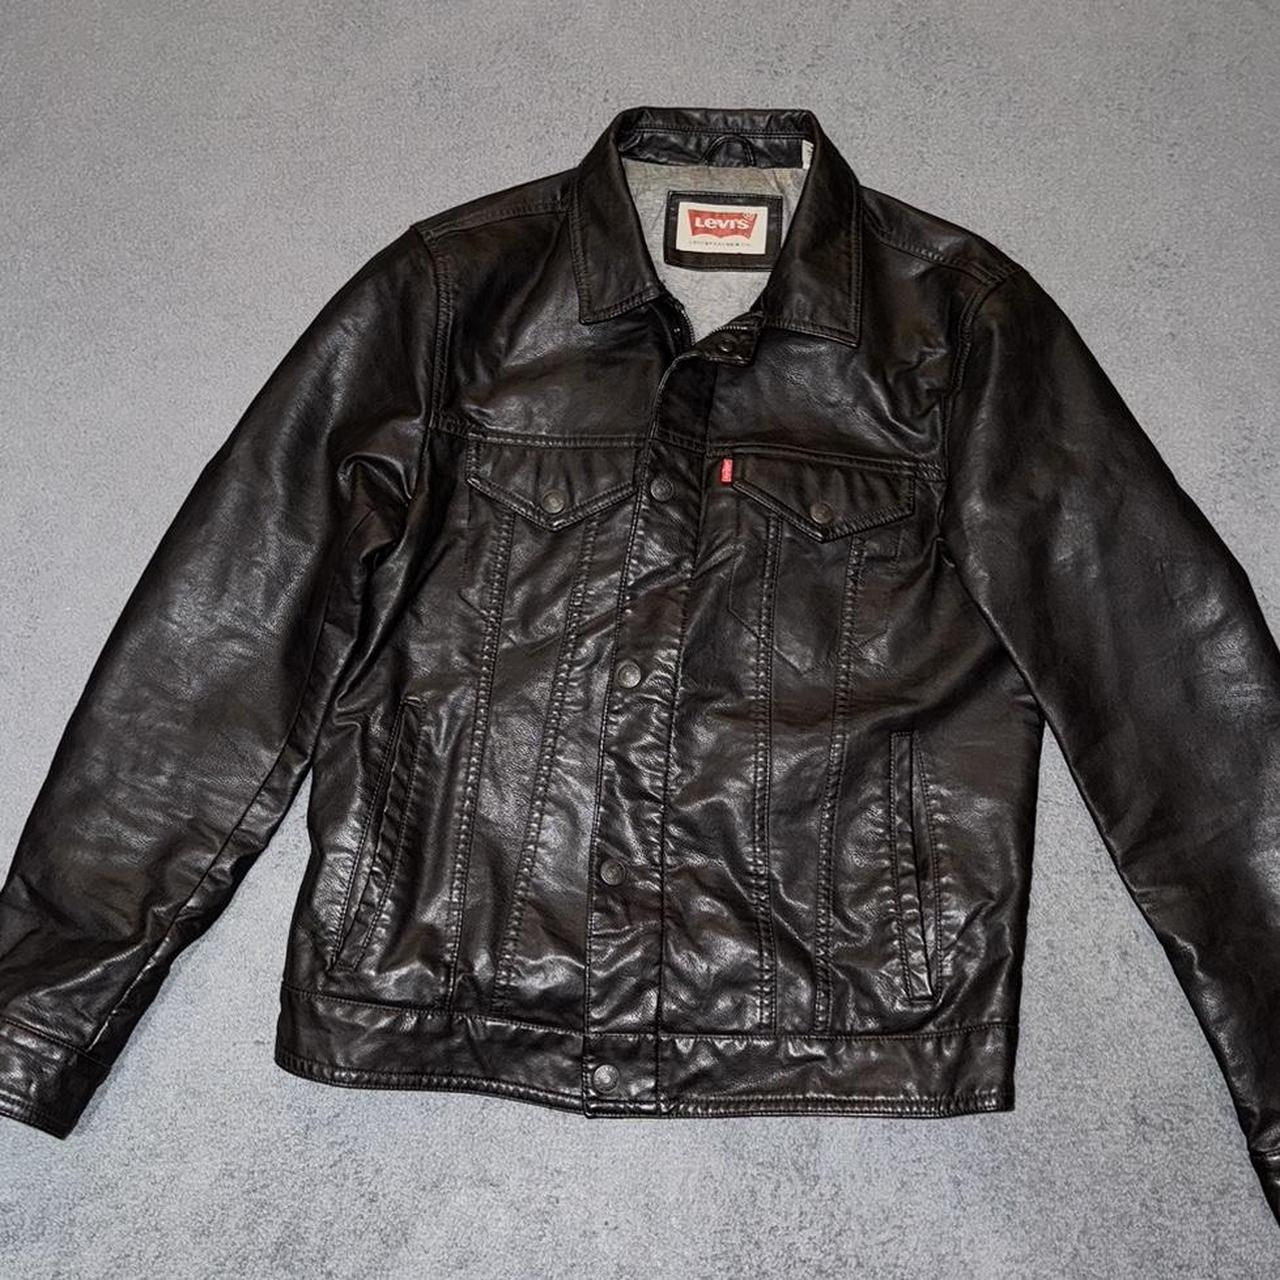 Levi’s Leather Jacket in Black-Brown, good... - Depop